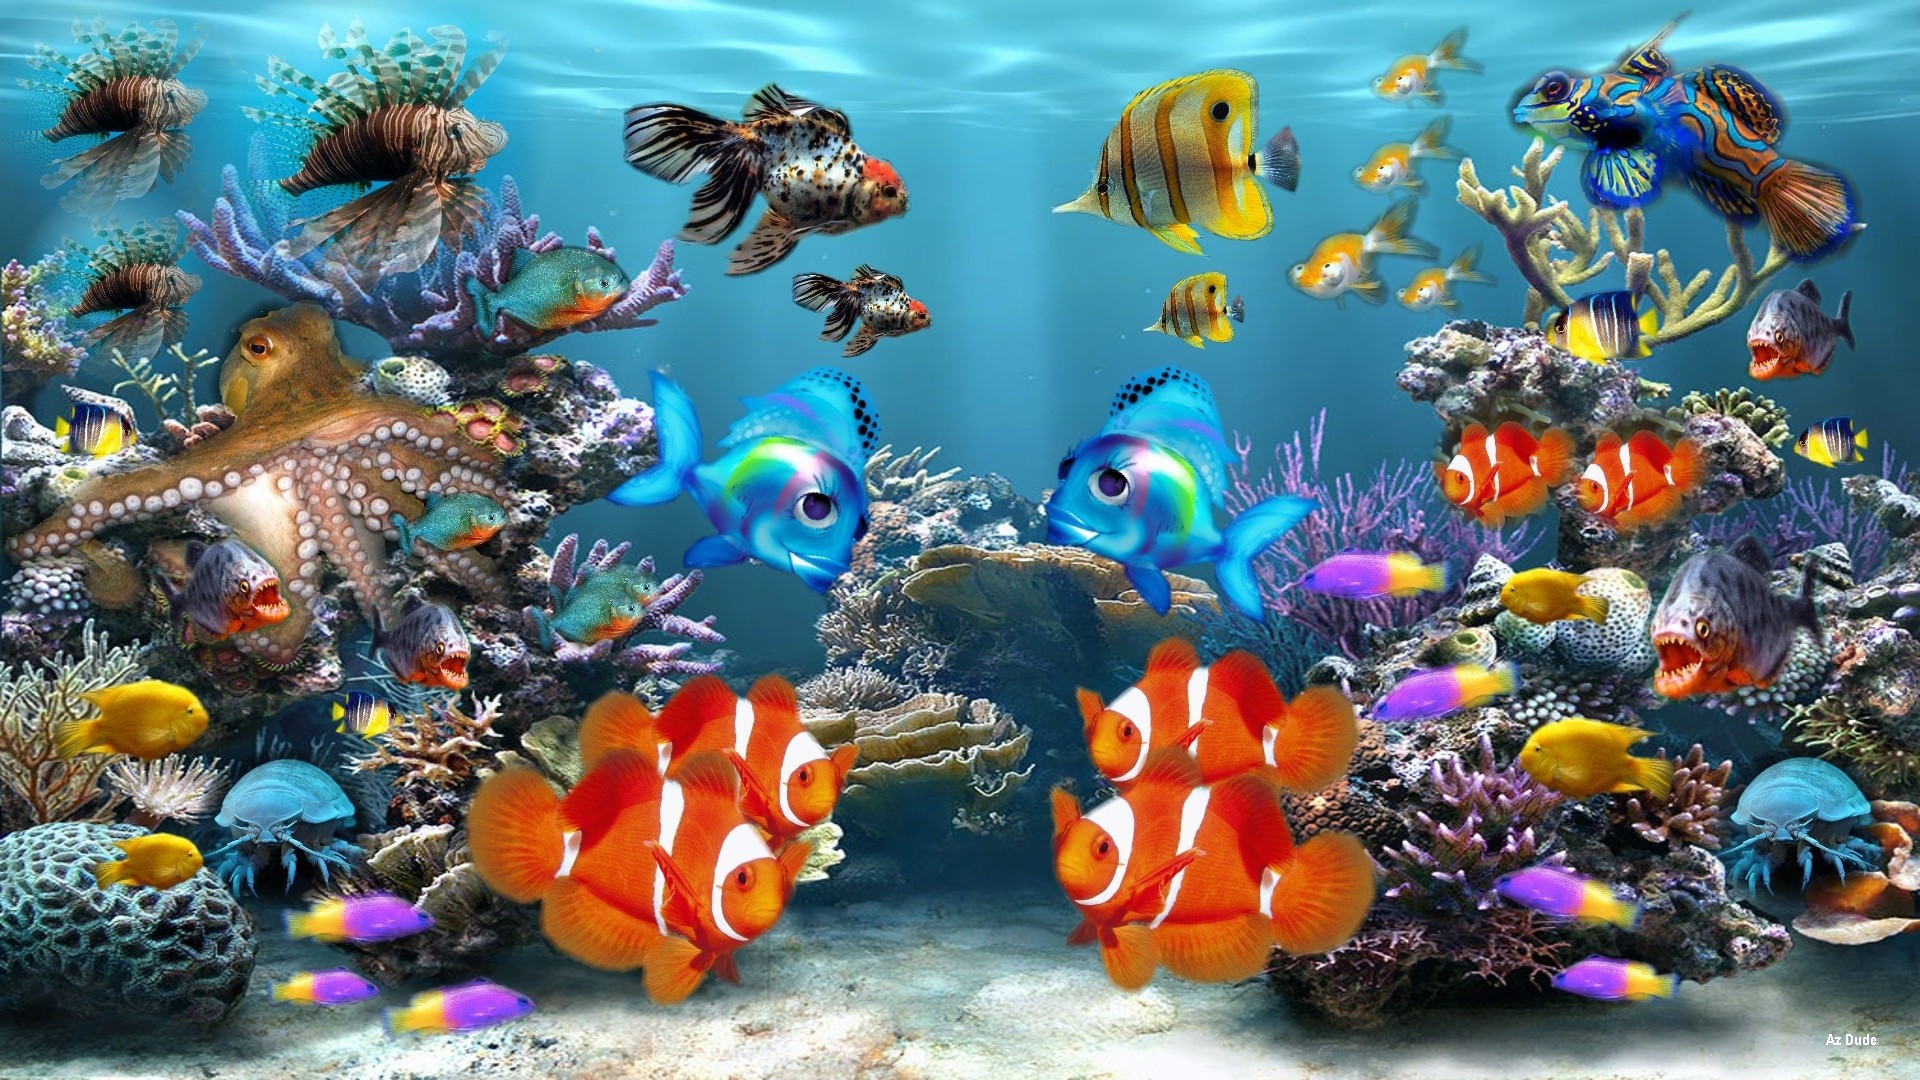 1920x1080 HD Fish Wallpaper Find Best Latest HD Fish Wallpaper For Your PC HD Fish  Wallpaper Find